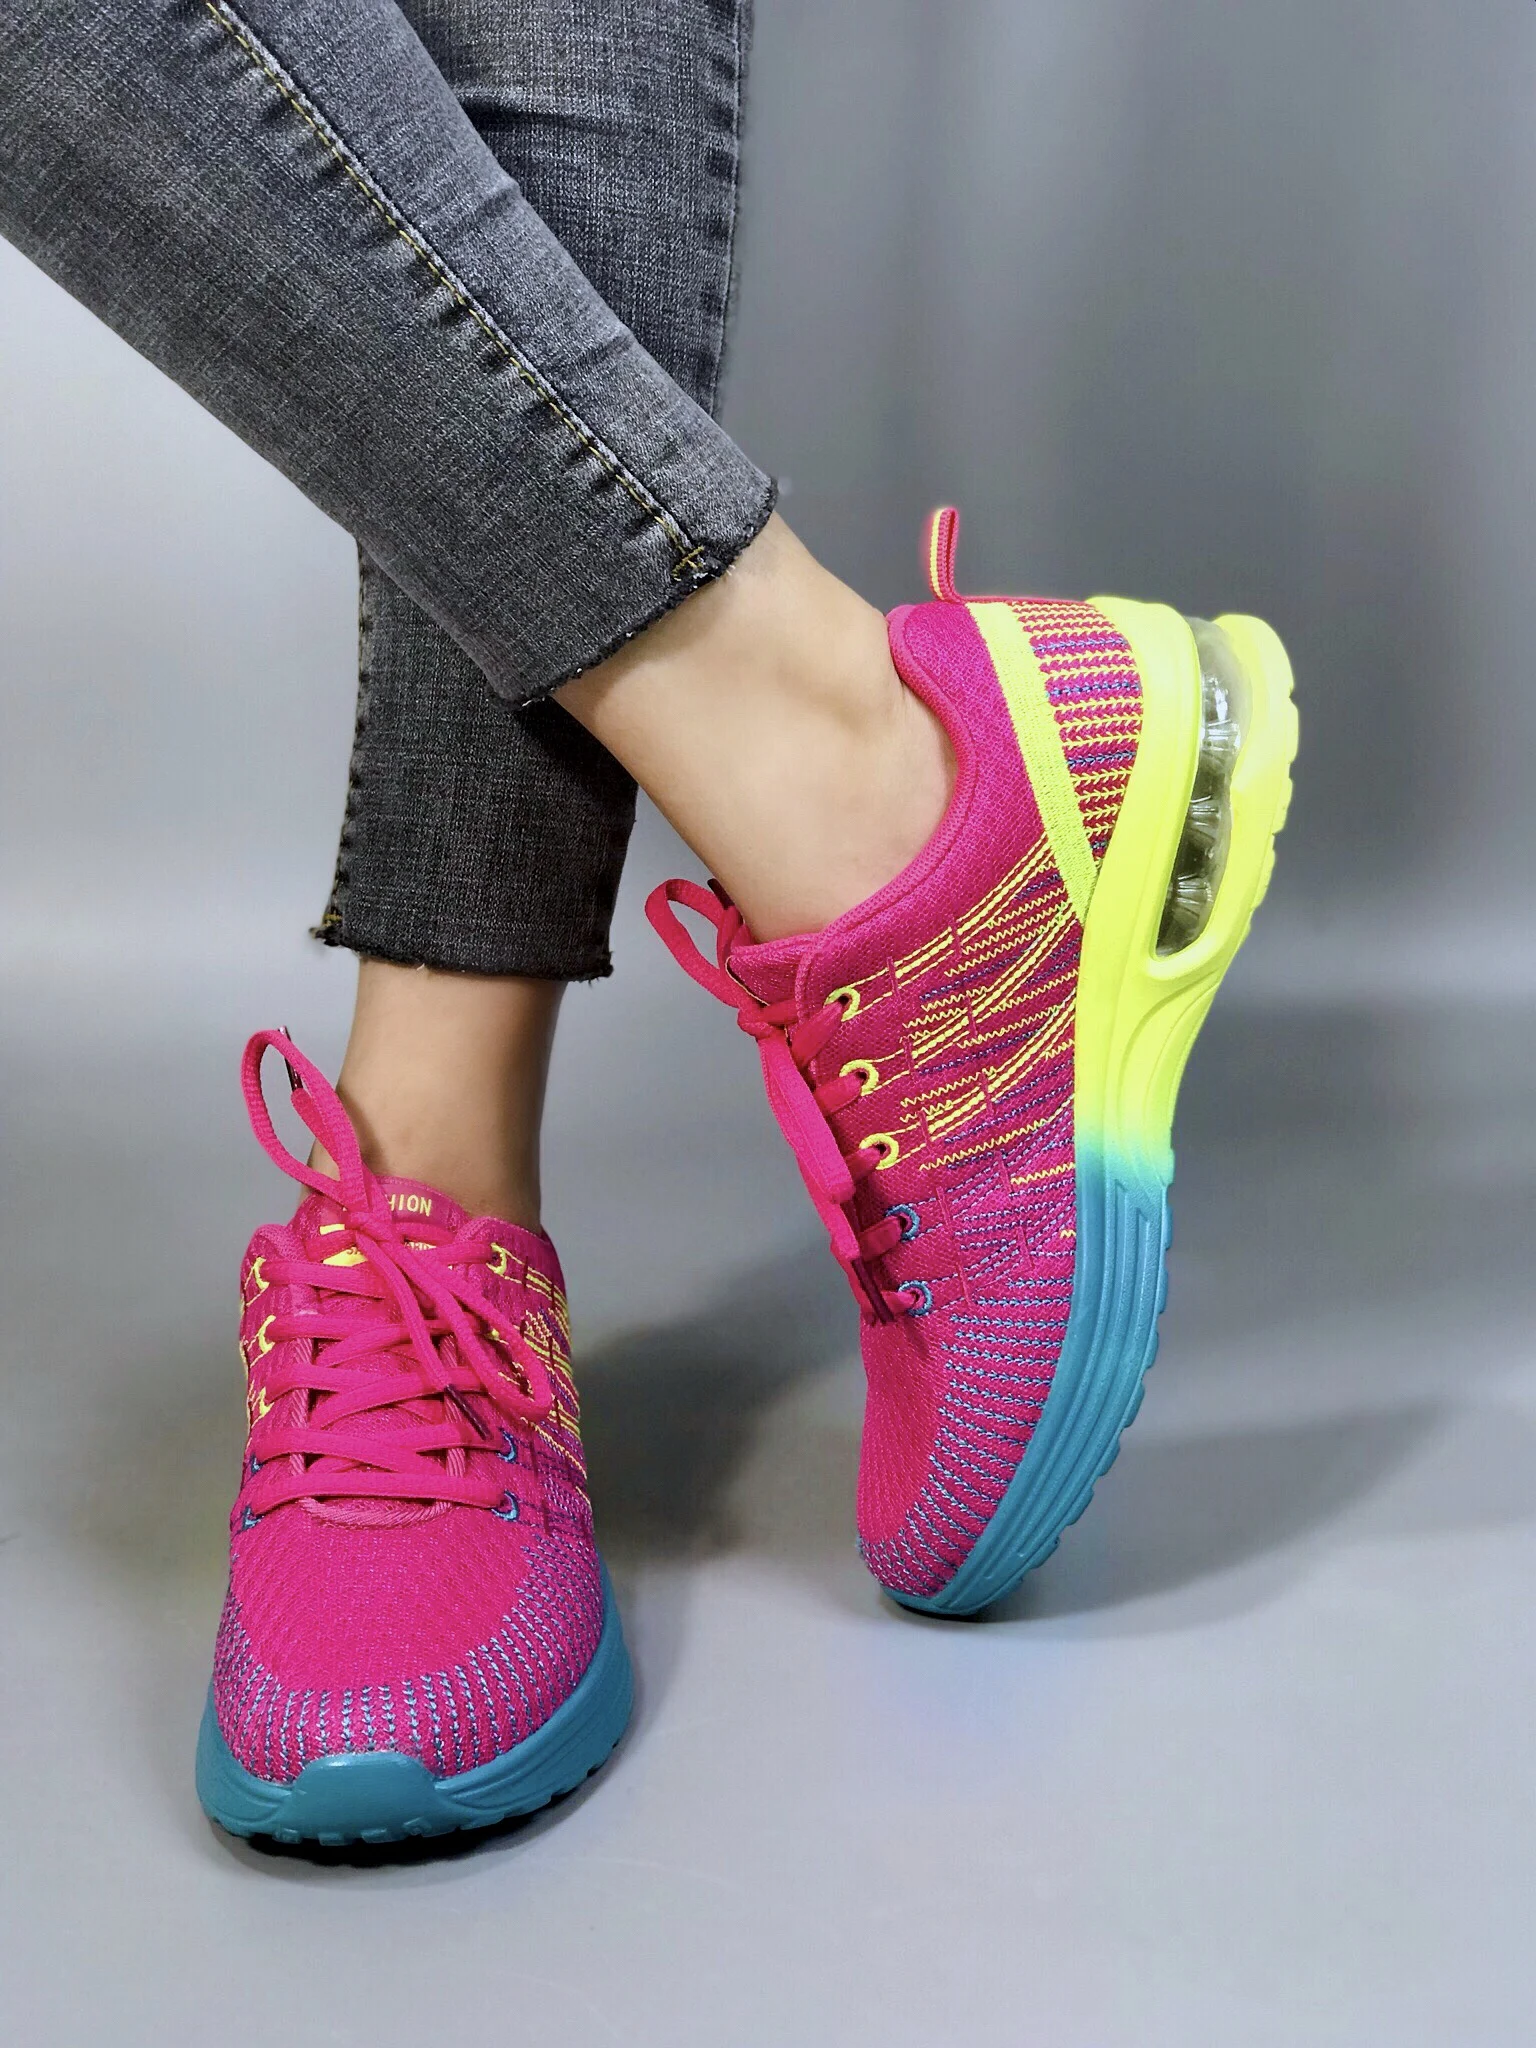 Фото 2019 популярные женские беговые кроссовки nikeeinglys обувь повседневные на воздушной